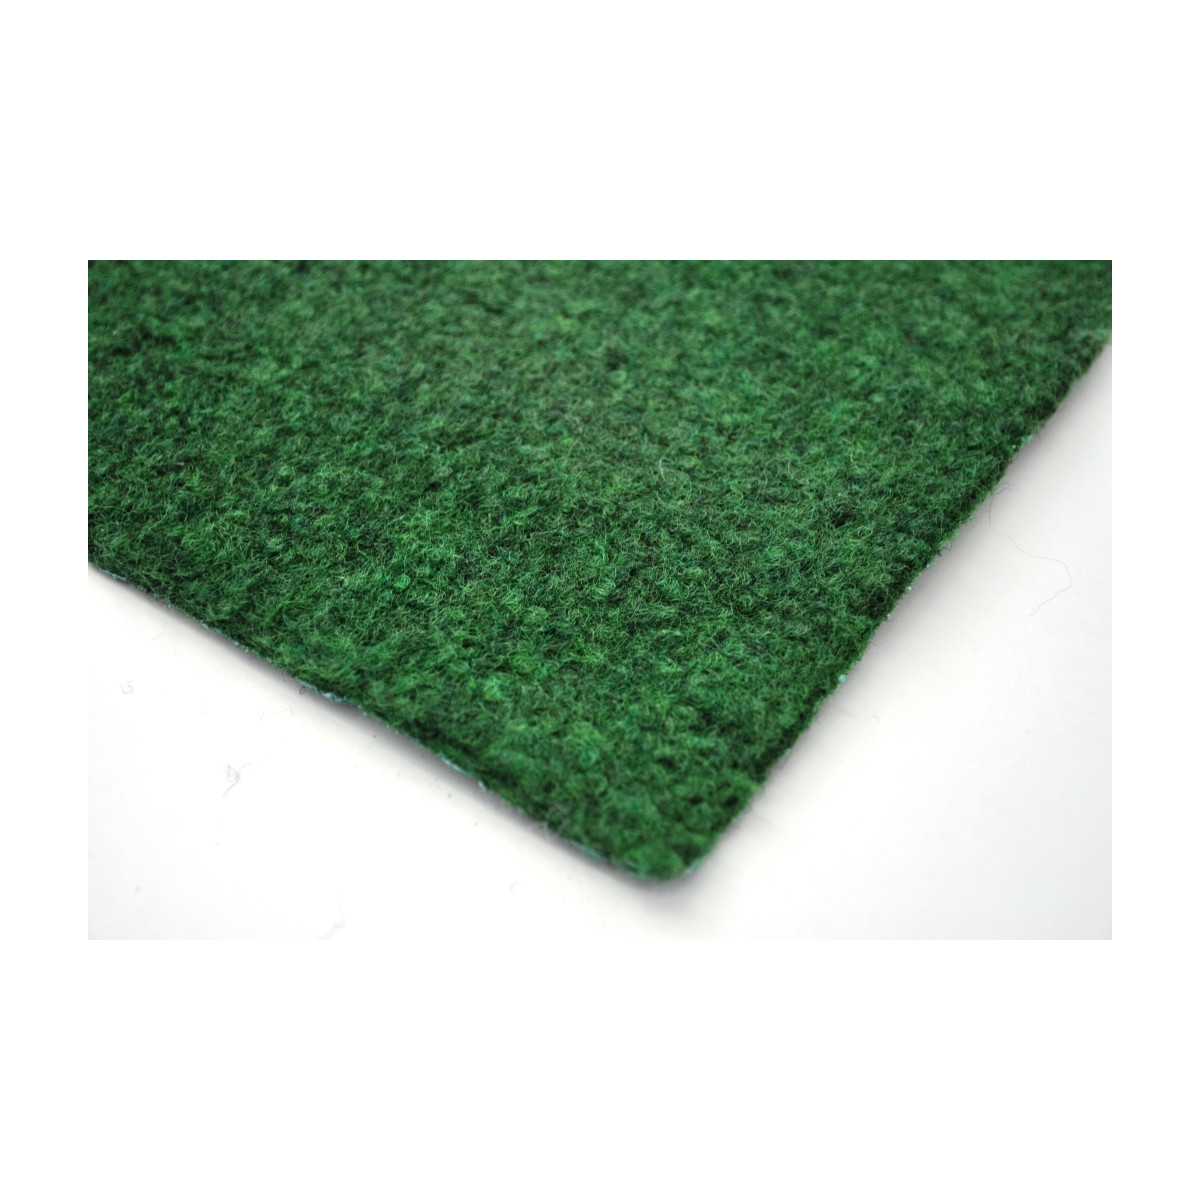 AKCE: 192x800 cm Travní koberec Sporting metrážní